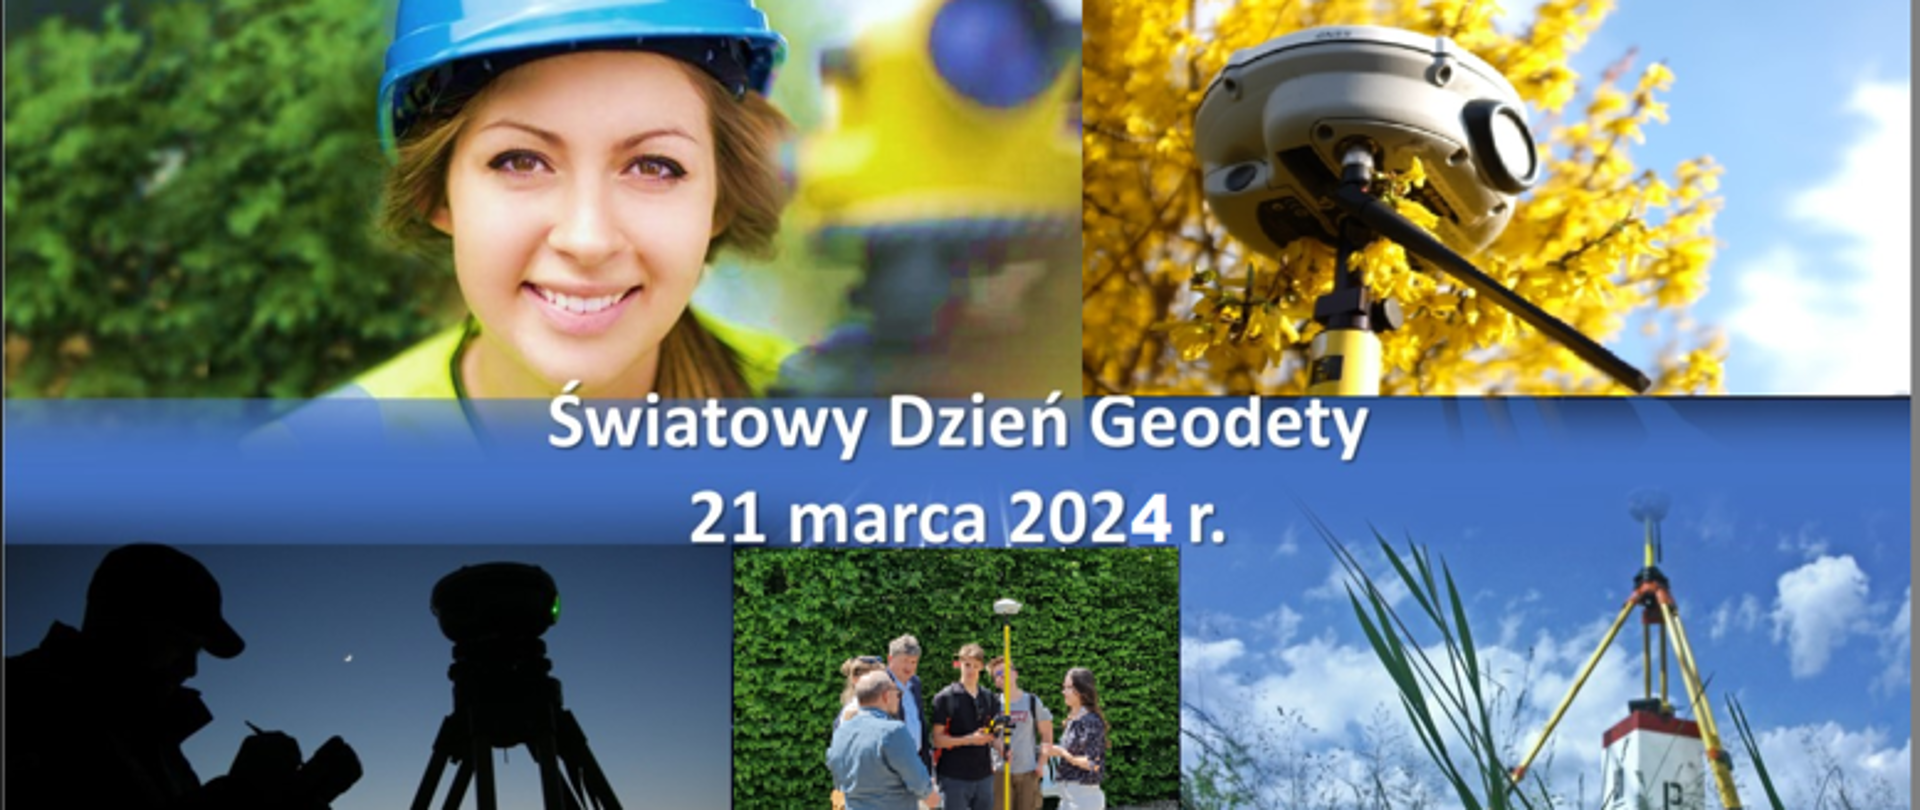 Ilustracja przedstawia grafikę ukazującą geodetów w różnych sytuacjach w pracy z napisem "Światowy Dzień Geodety 21 marca 2024 r." 